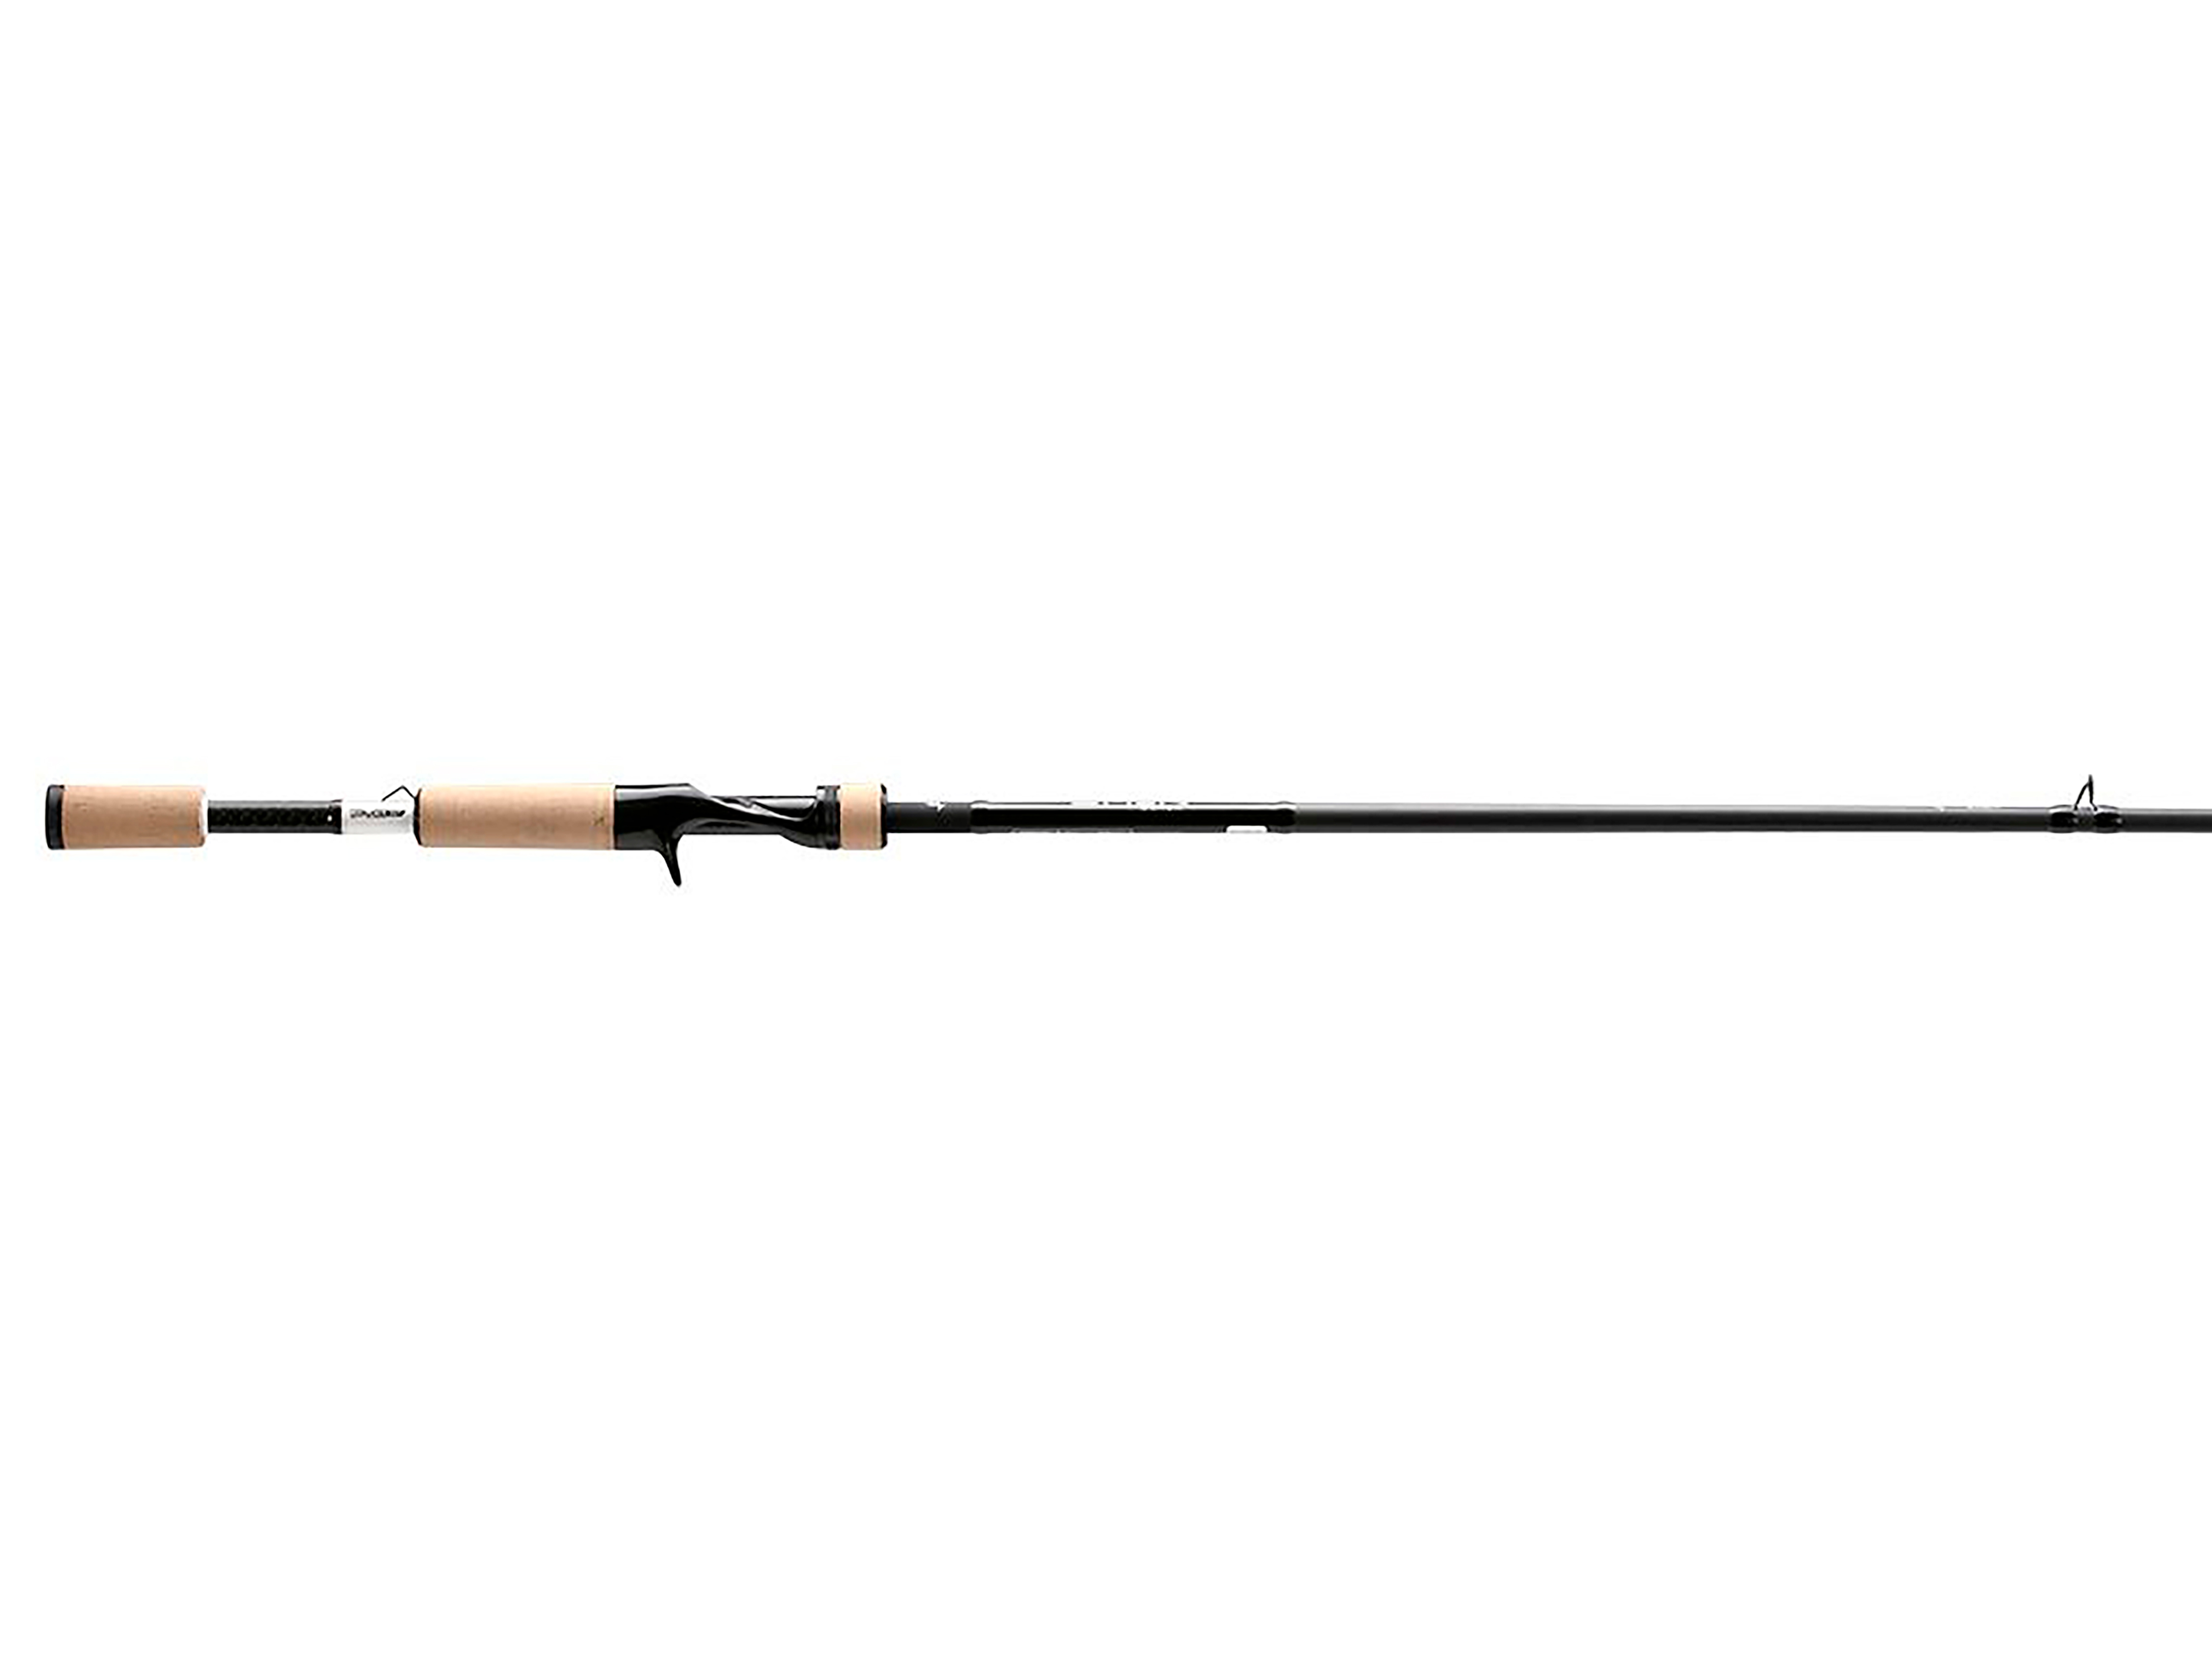 13 Fishing Omen Black Casting Rod